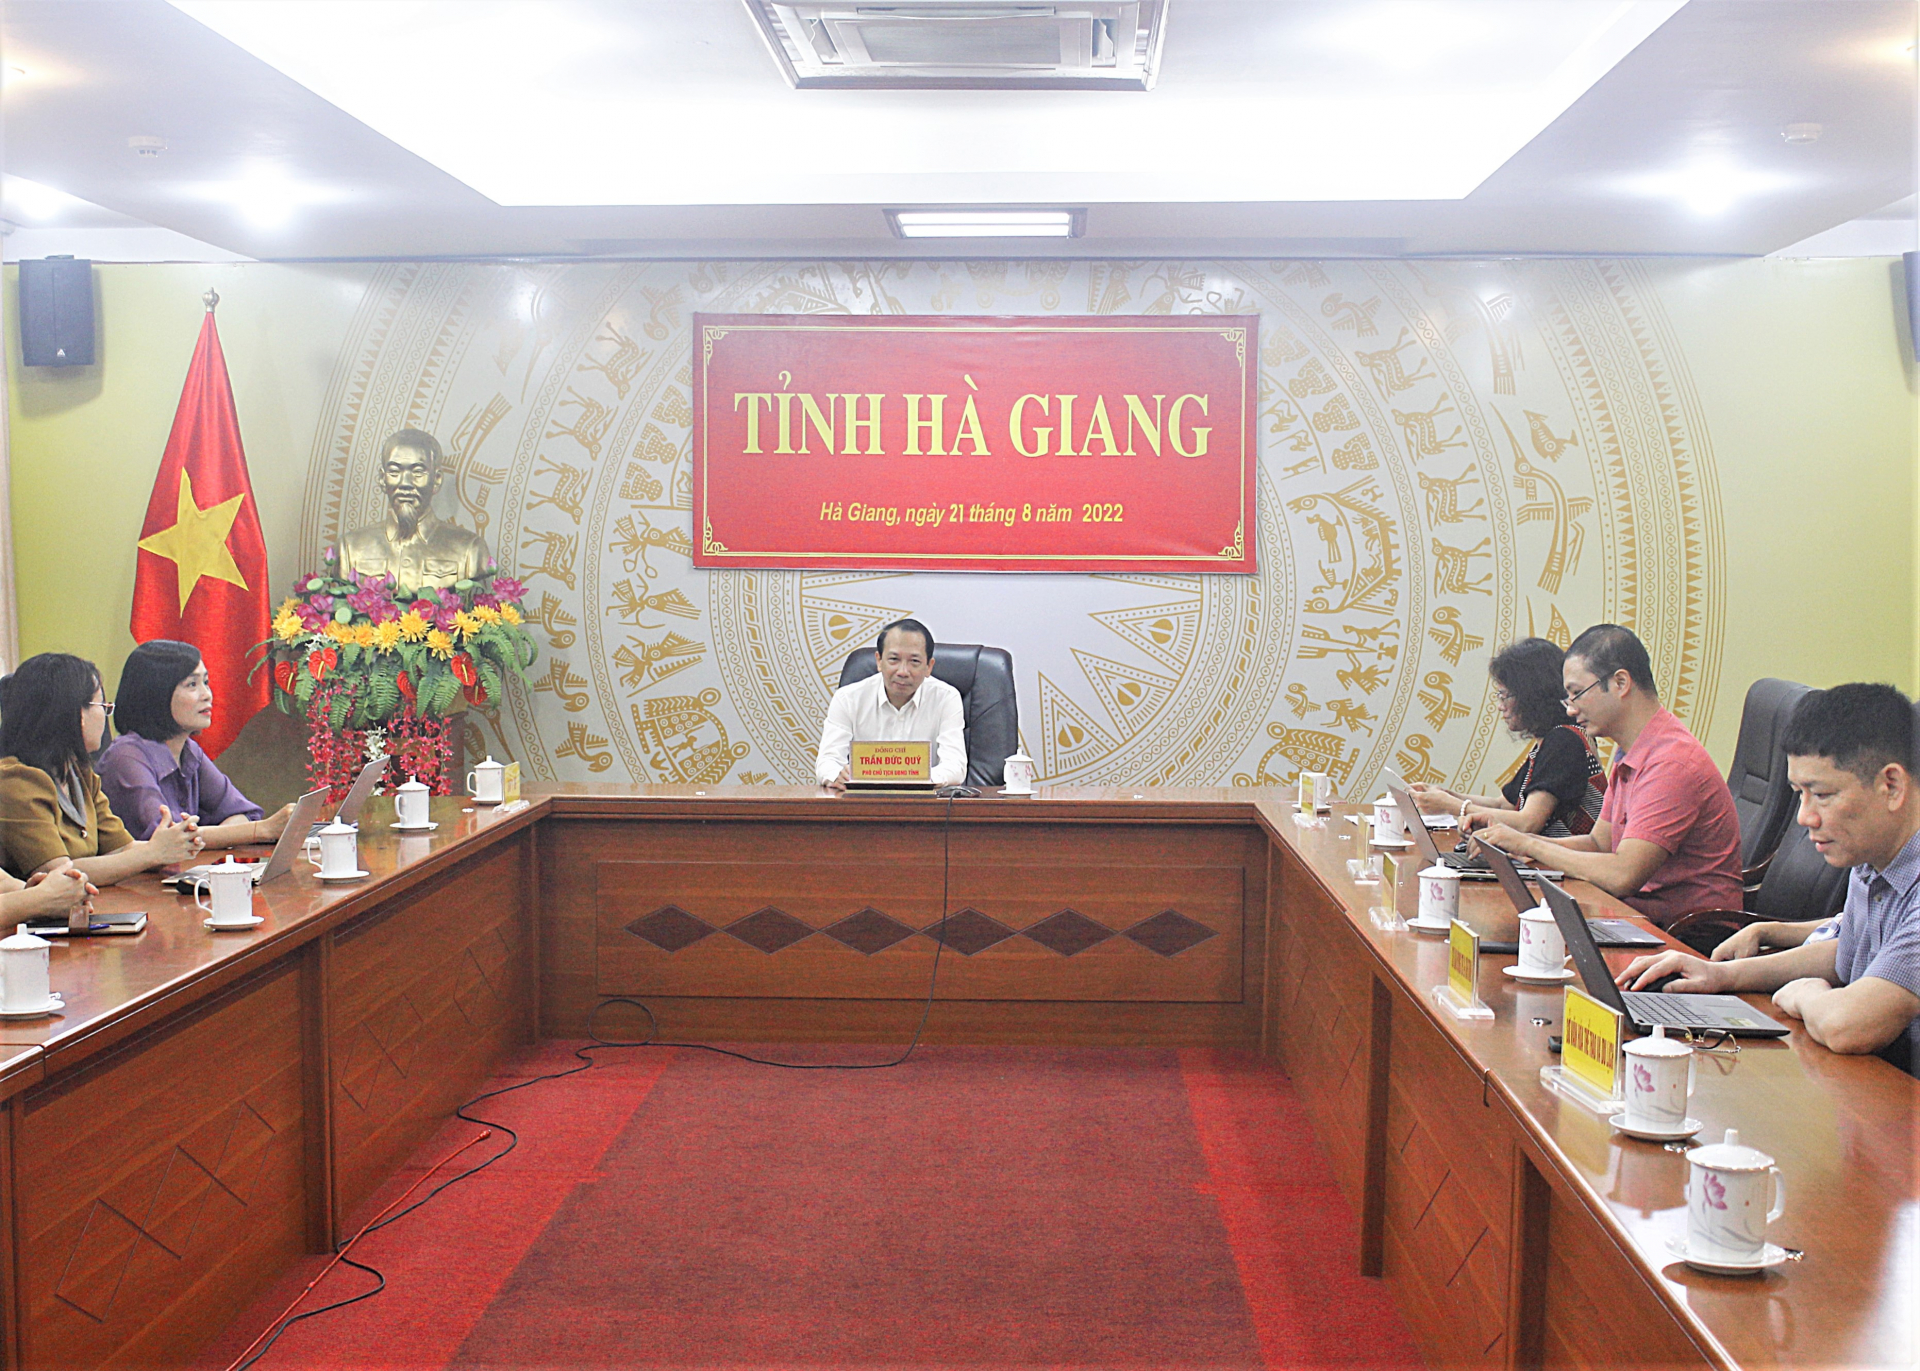 Phó Chủ tịch UBND tỉnh Trần Đức Quý và các đại biểu dự hội nghị tại điểm cầu Hà Giang.